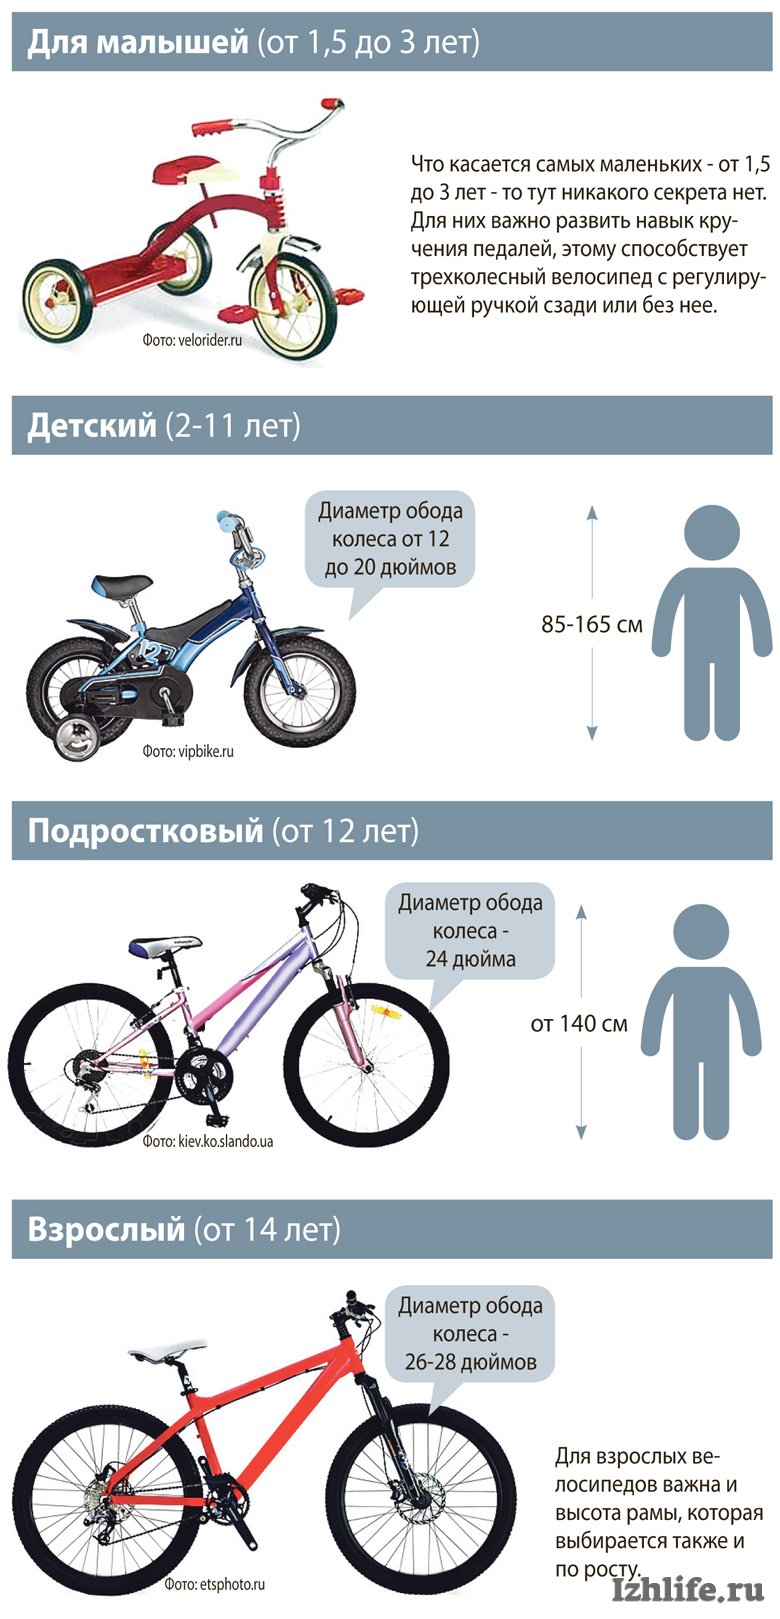 Какой размер рамы велосипеда выбрать под рост. Размер колес детского велосипеда по росту. Как выбрать велосипед для ребенка 4 года по росту и весу таблица. Таблица подбора велосипеда по росту ребенка рамы. Как выбрать раму для велосипеда по росту таблица.